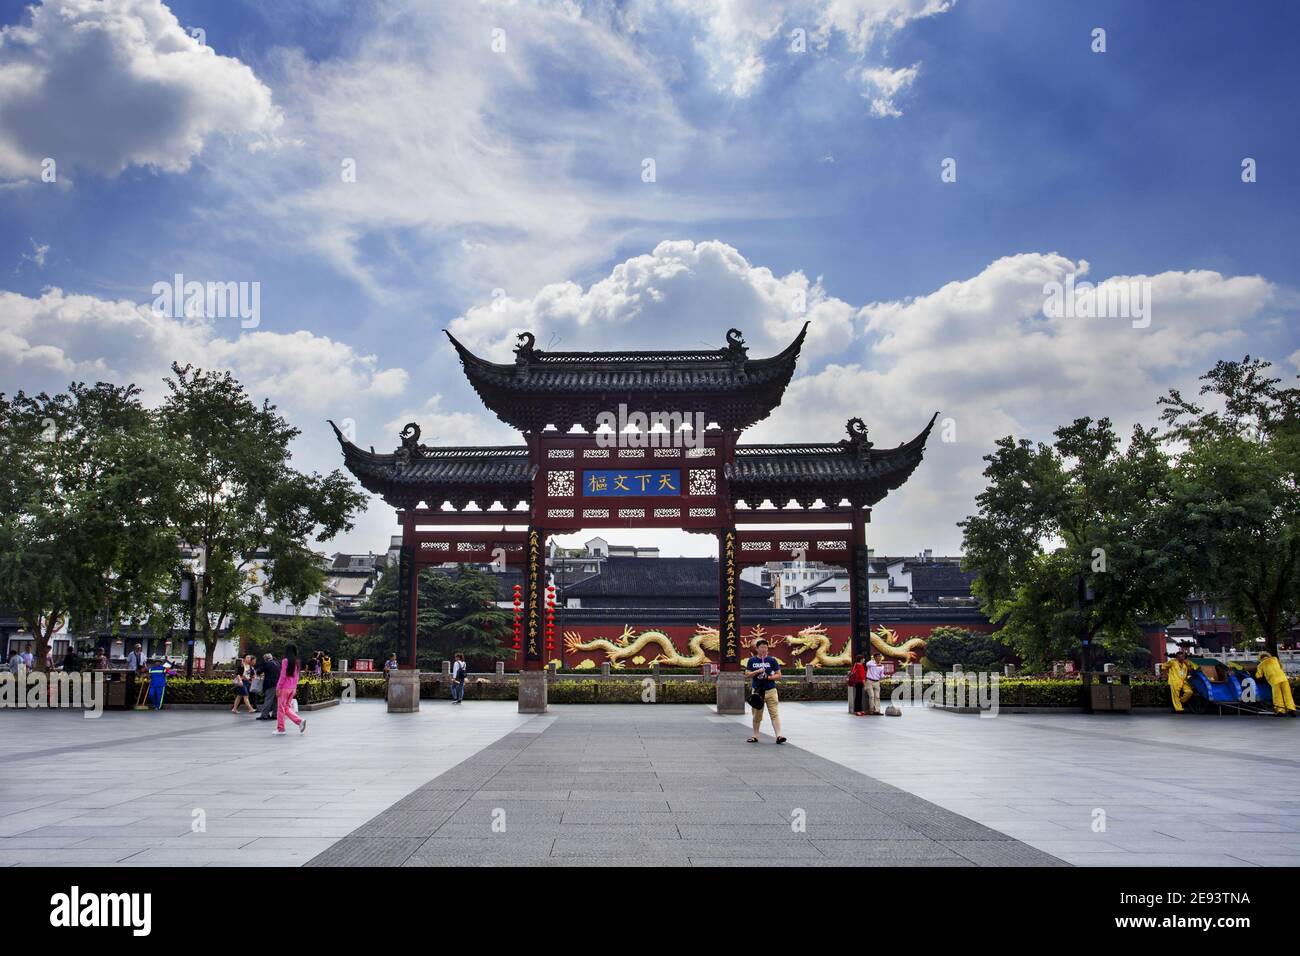 Confucius temple in nanjing, jiangsu province Stock Photo